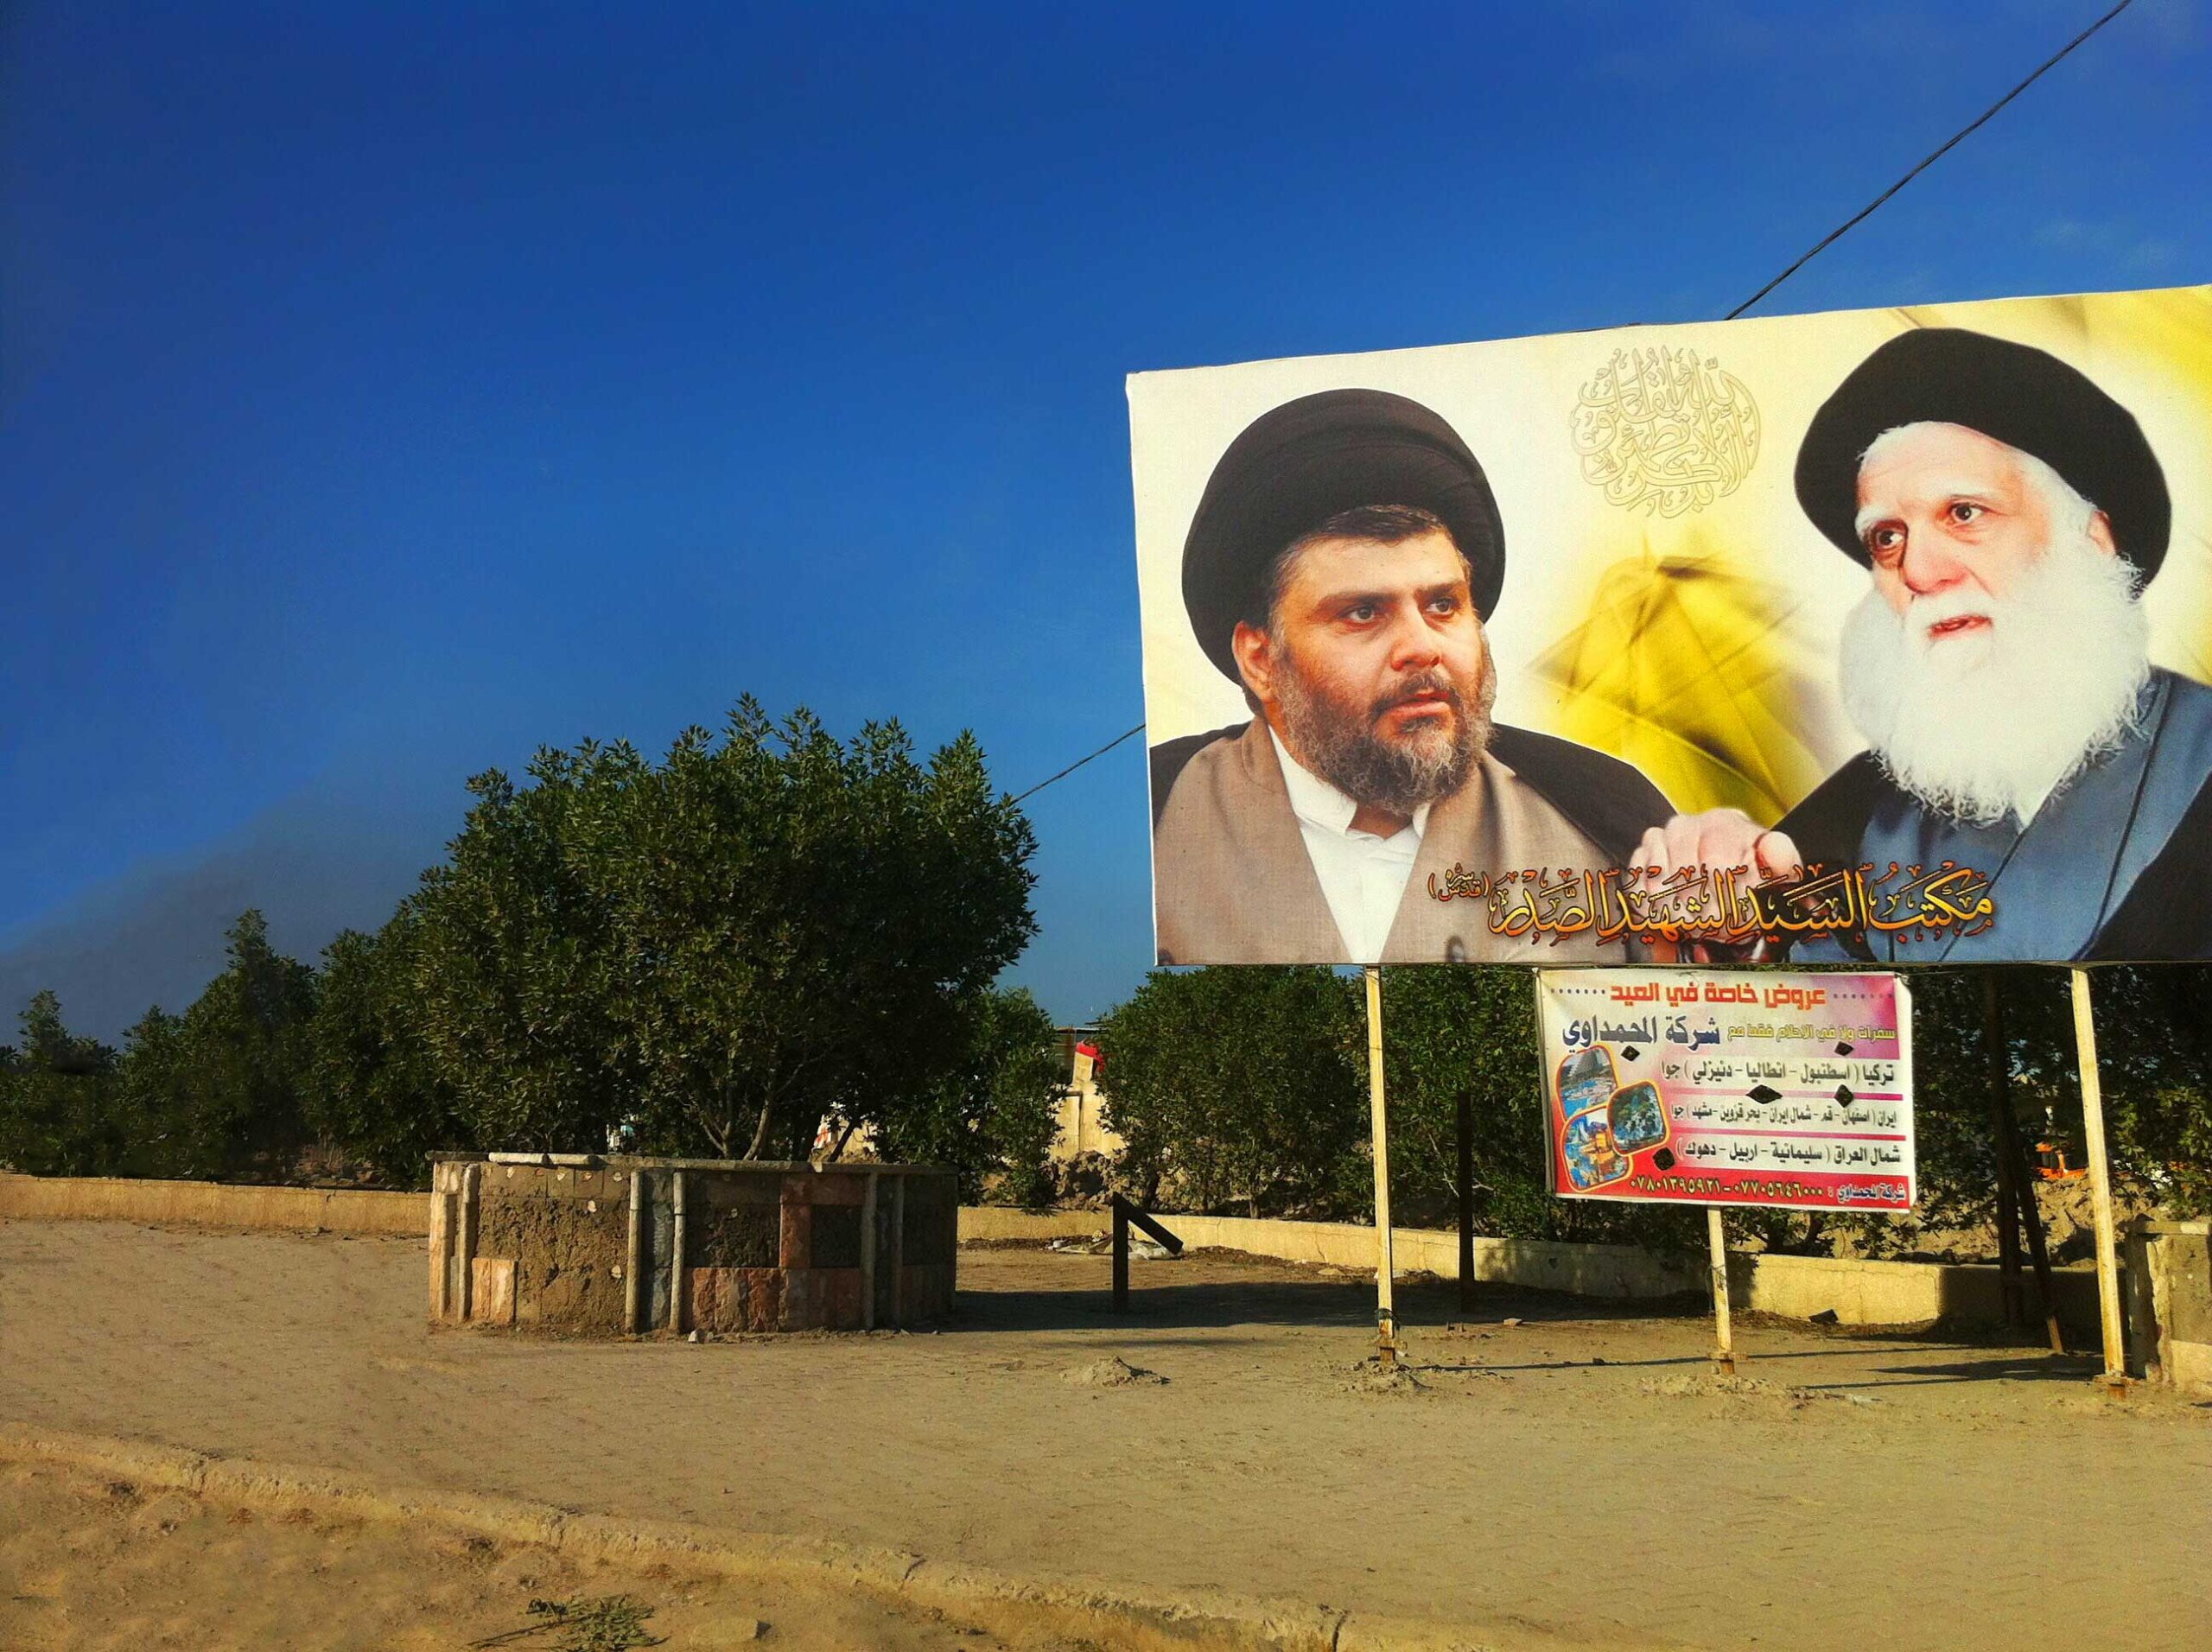 Muqtada al-Sadr and Iraq